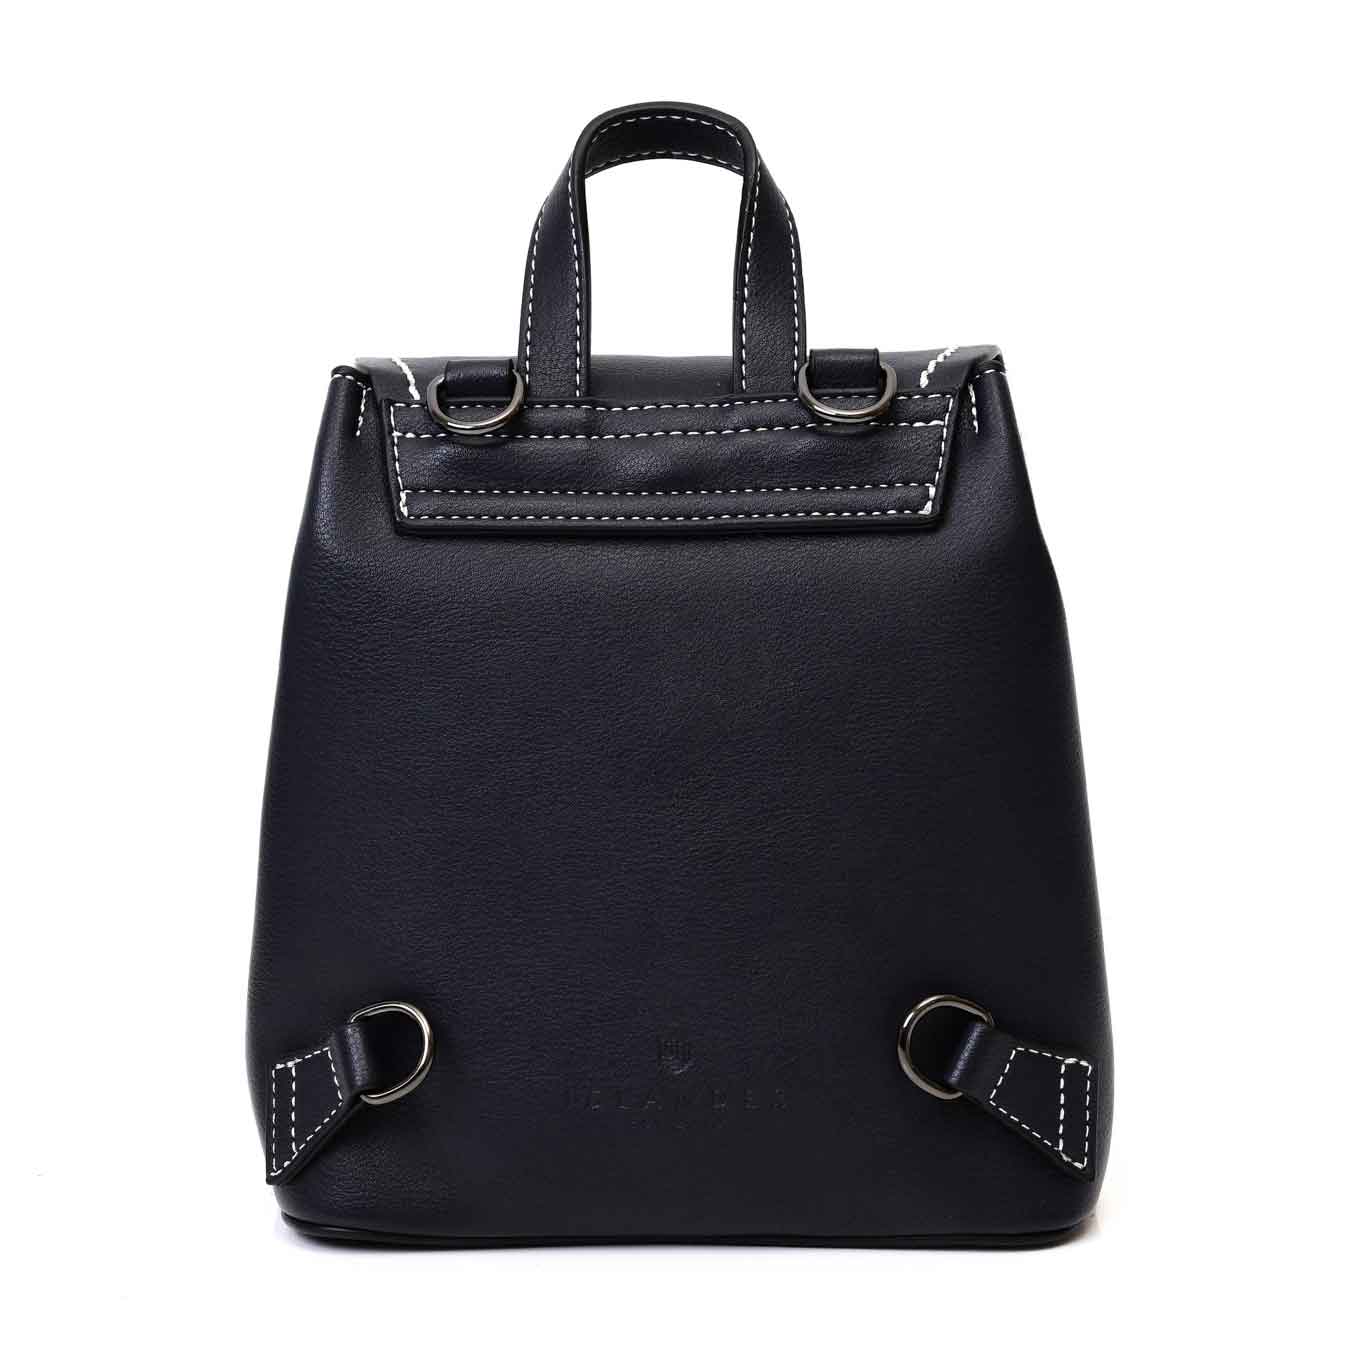 Product image for Celtic Tweed Bag | Blackwatch Tartan Harris Tweed® Backpack